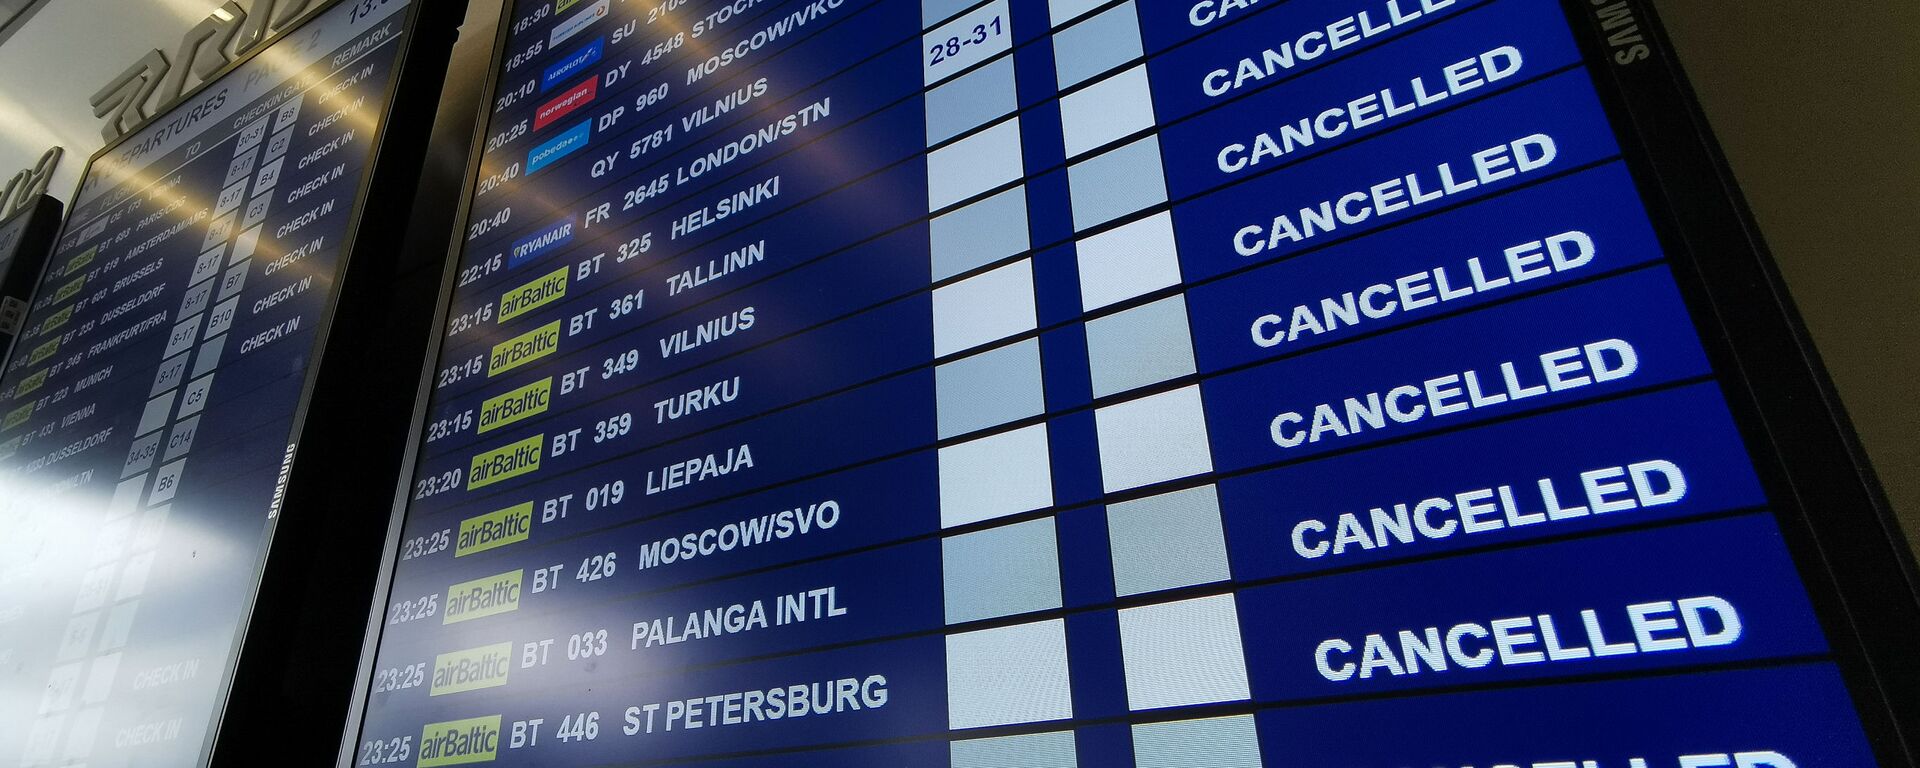 Табло вылета аэропорту Рига со списком отмененных рейсов авиакомпании airBaltic - Sputnik Латвия, 1920, 31.03.2020